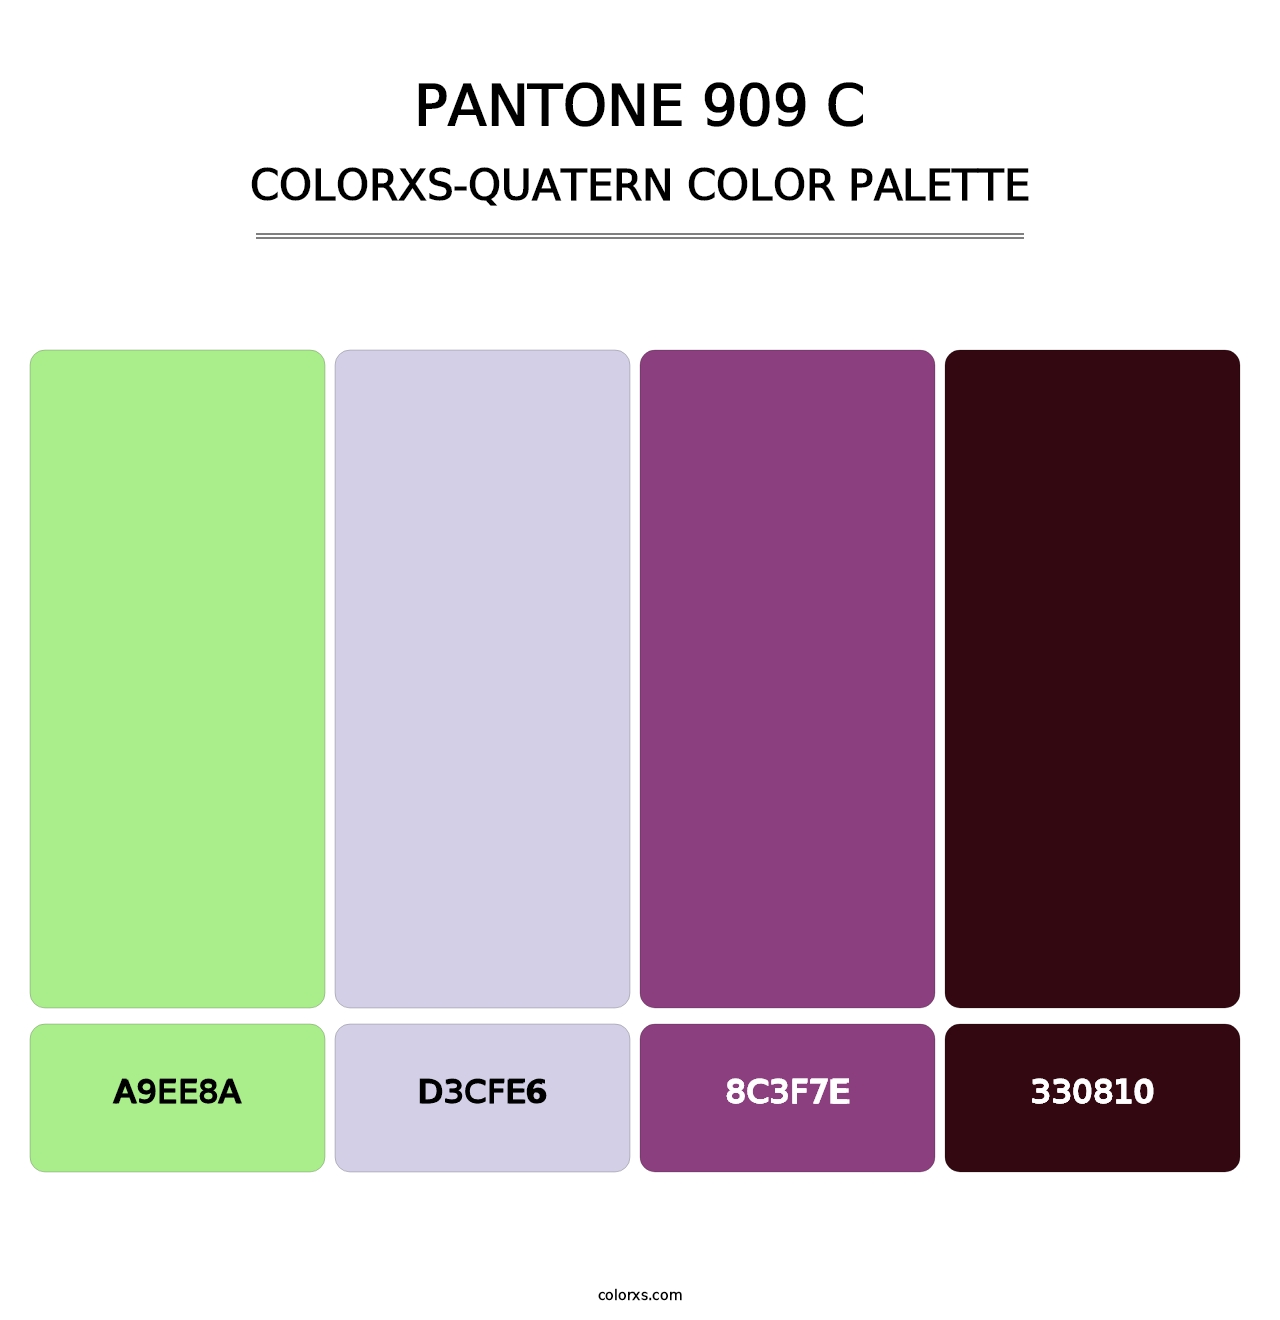 PANTONE 909 C - Colorxs Quatern Palette